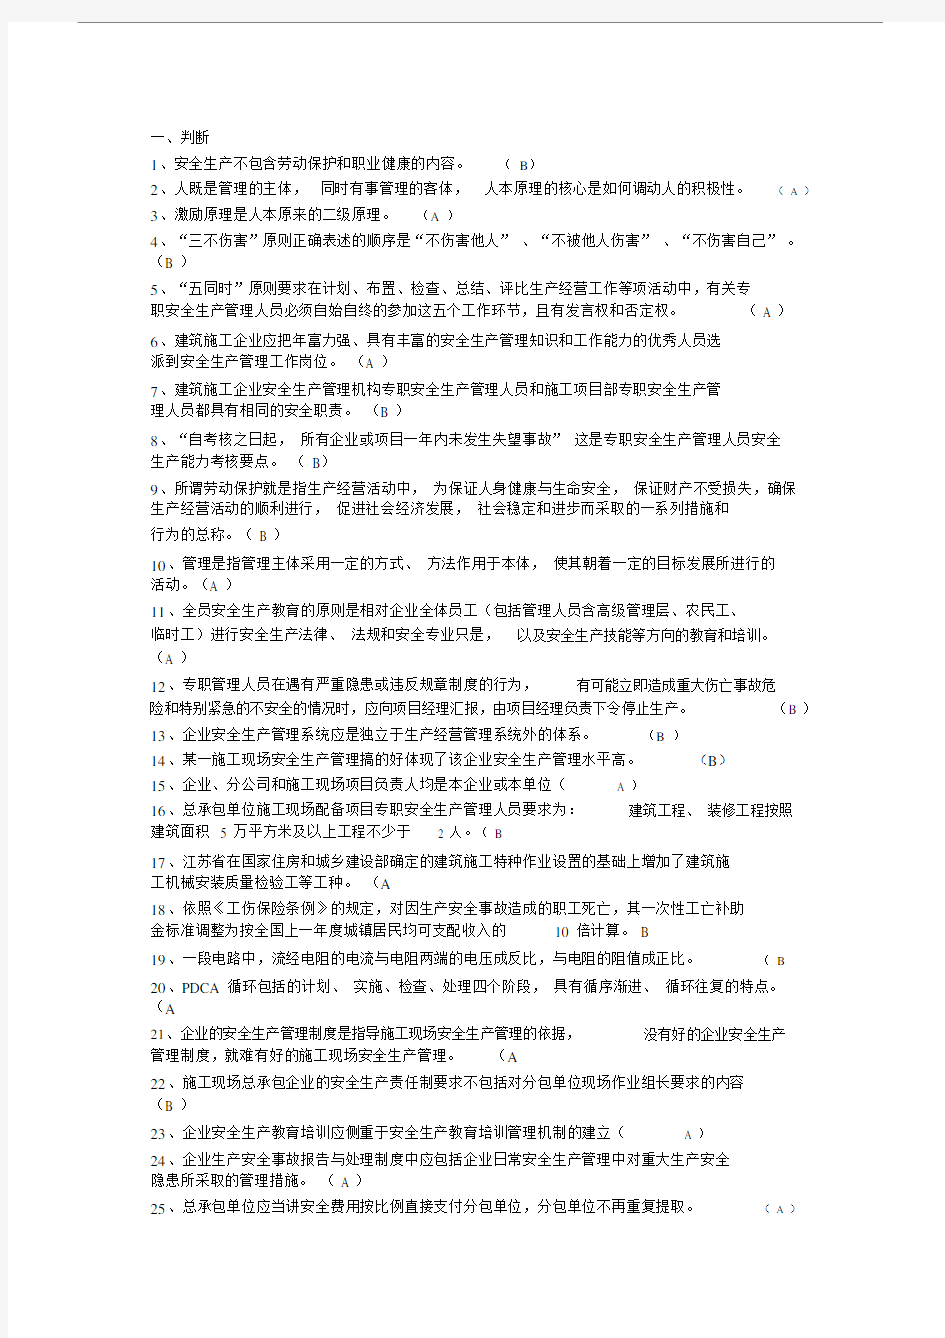 【2019年整理】江苏省c类安全员考试题库